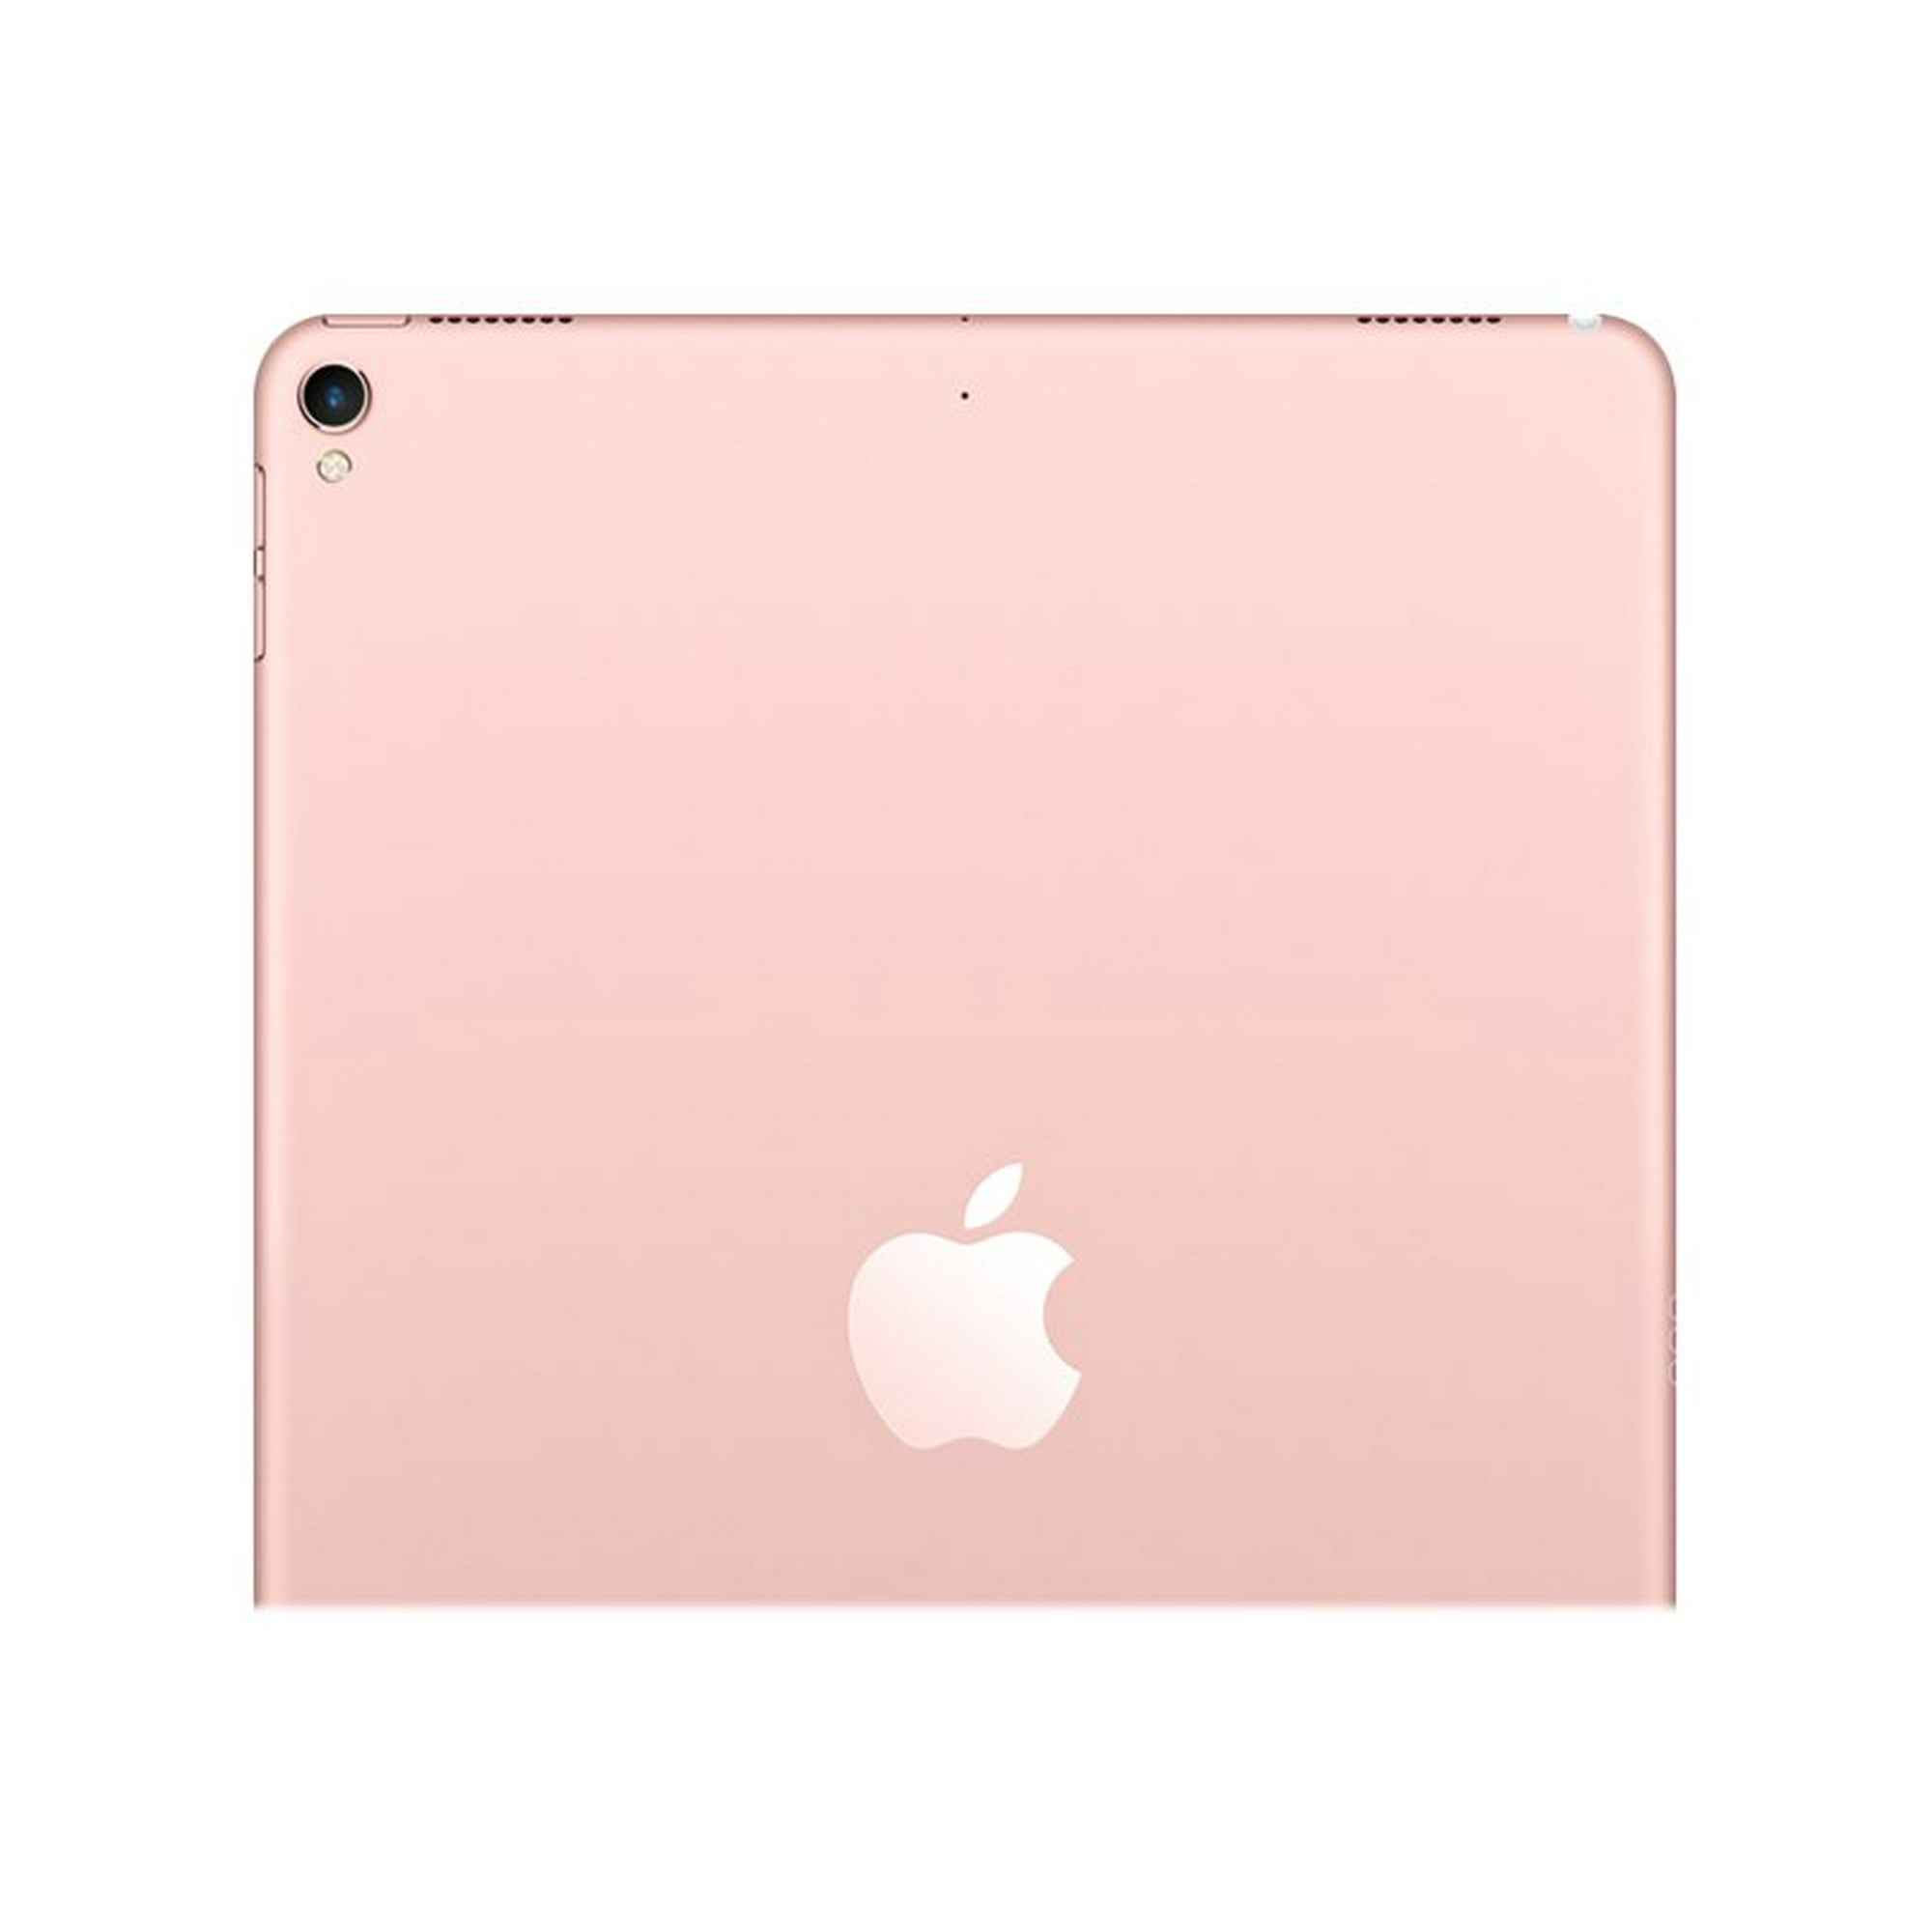 Apple 10.5-inch iPad Pro Wi-Fi - 1st generation - tablet - 64 GB